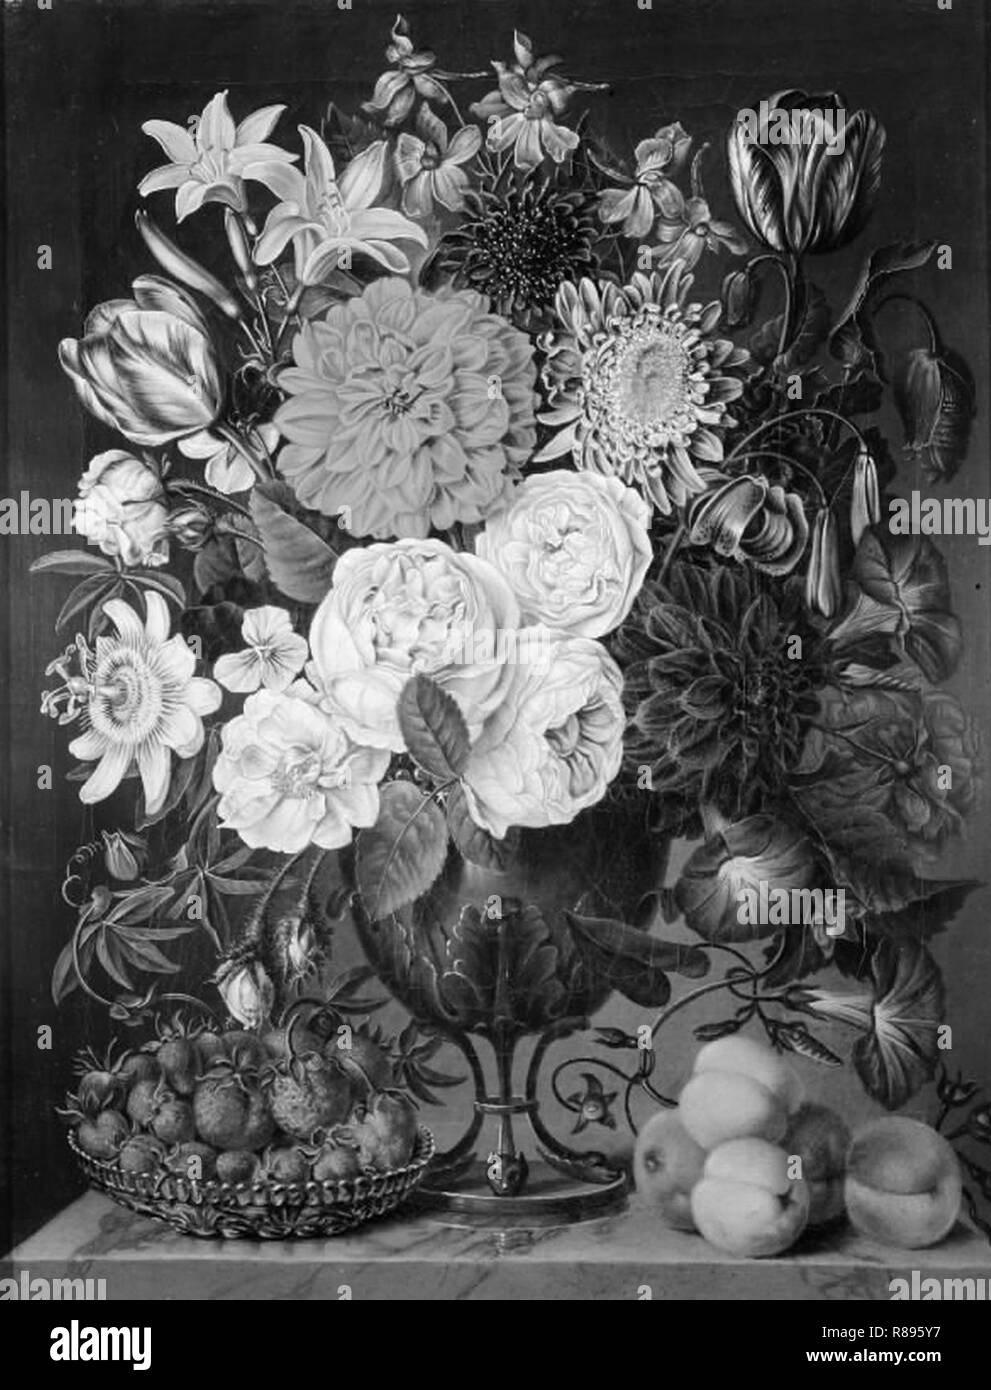 Carl Christian Seydewitz - Blomster i en trefodet vase og en skål med jordbær - Stock Photo